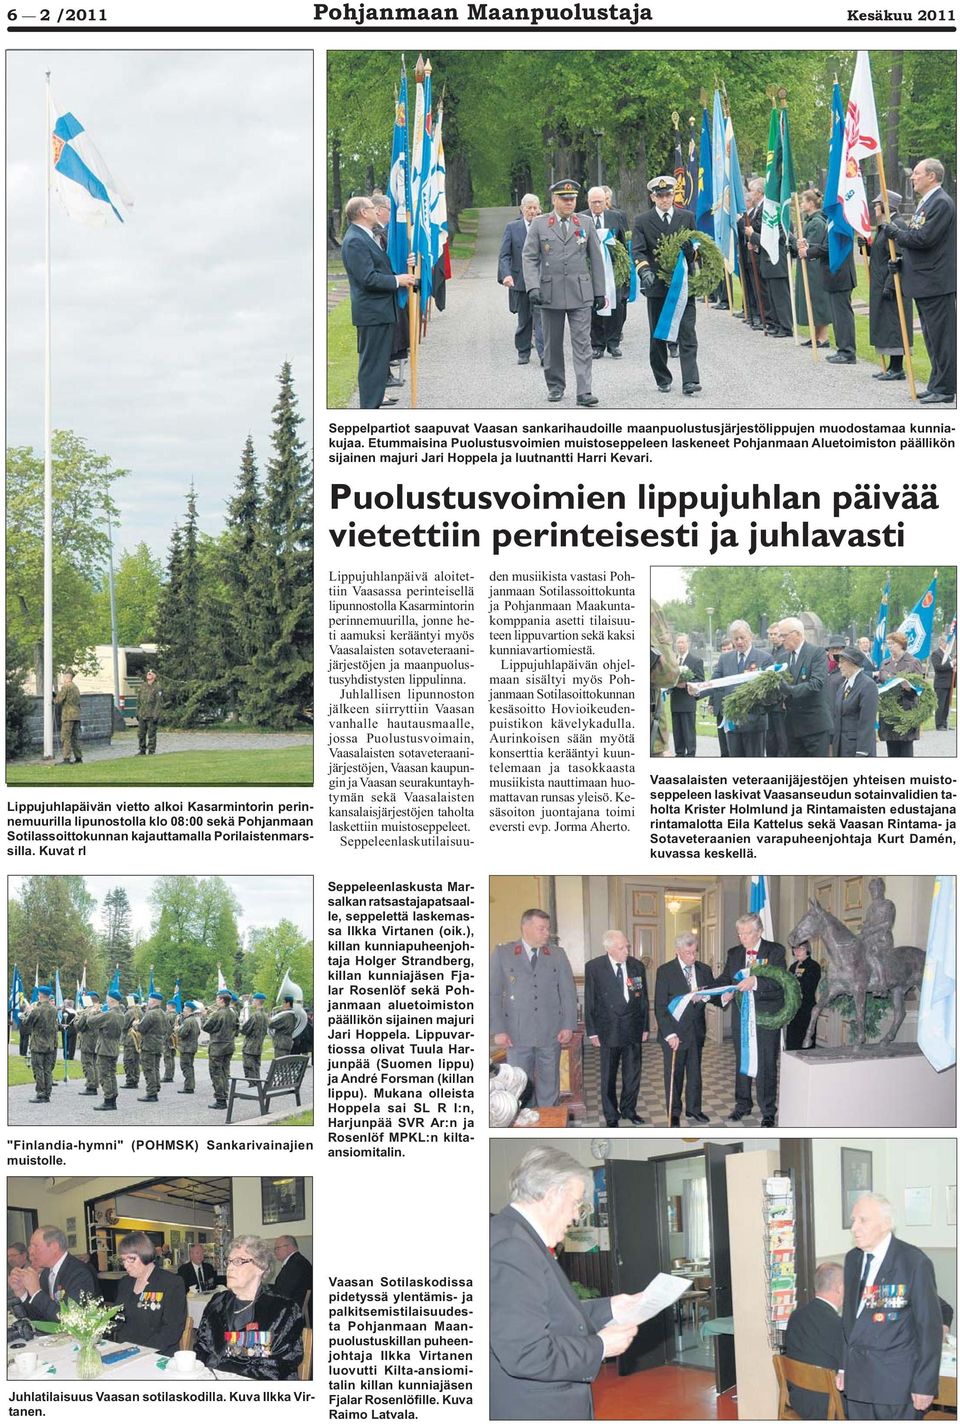 Puolustusvoimien lippujuhlan päivää vietettiin perinteisesti ja juhlavasti Lippujuhlapäivän vietto alkoi Kasarmintorin perinnemuurilla lipunostolla klo 08:00 sekä Pohjanmaan Sotilassoittokunnan